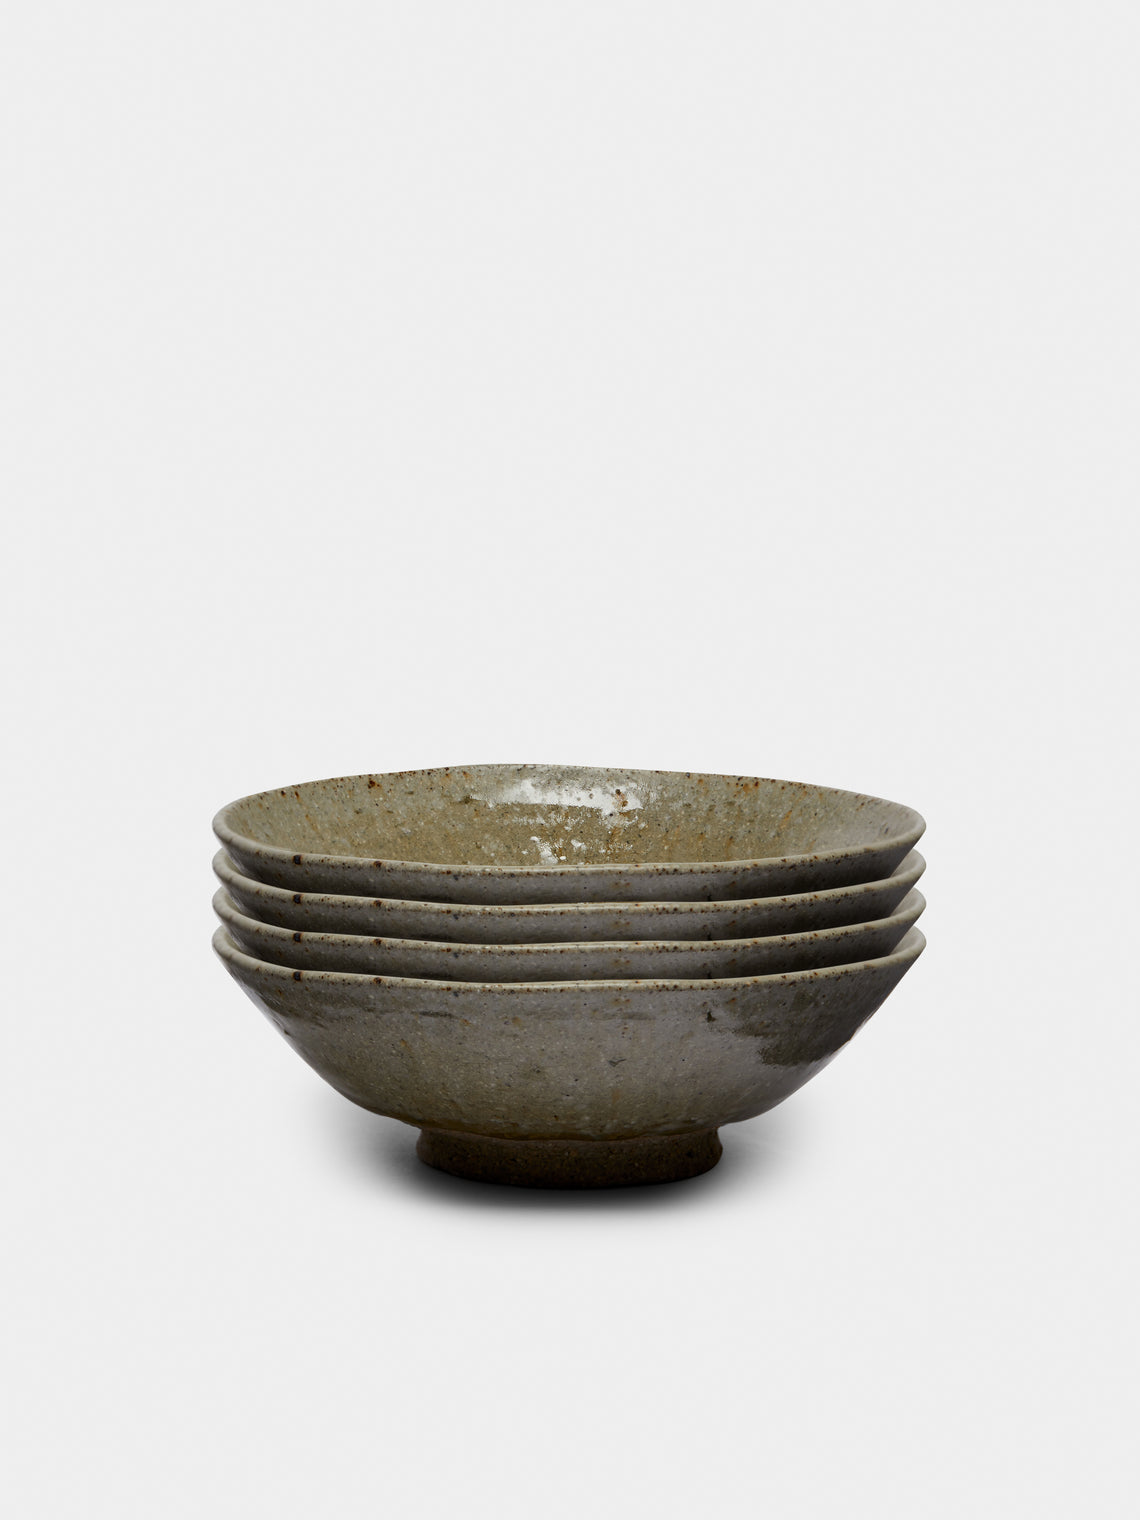 Ingot Objects - Ash-Glazed Ceramic Small Bowls (Set of 4) -  - ABASK